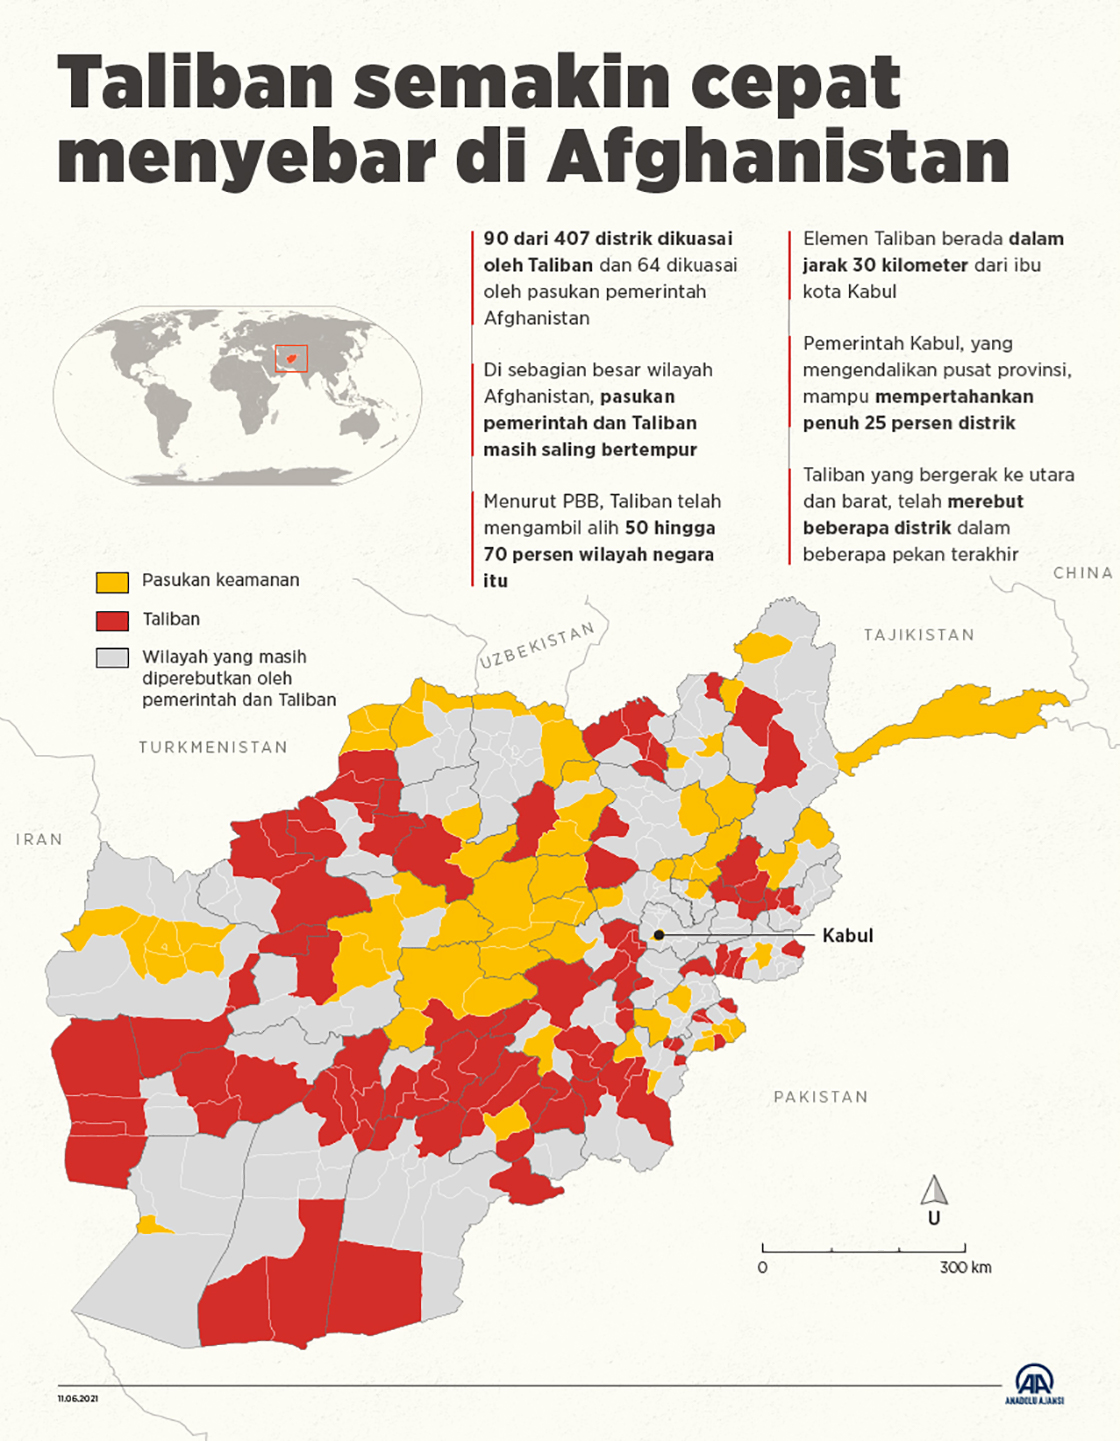 Taliban semakin cepat menyebar di Afghanistan